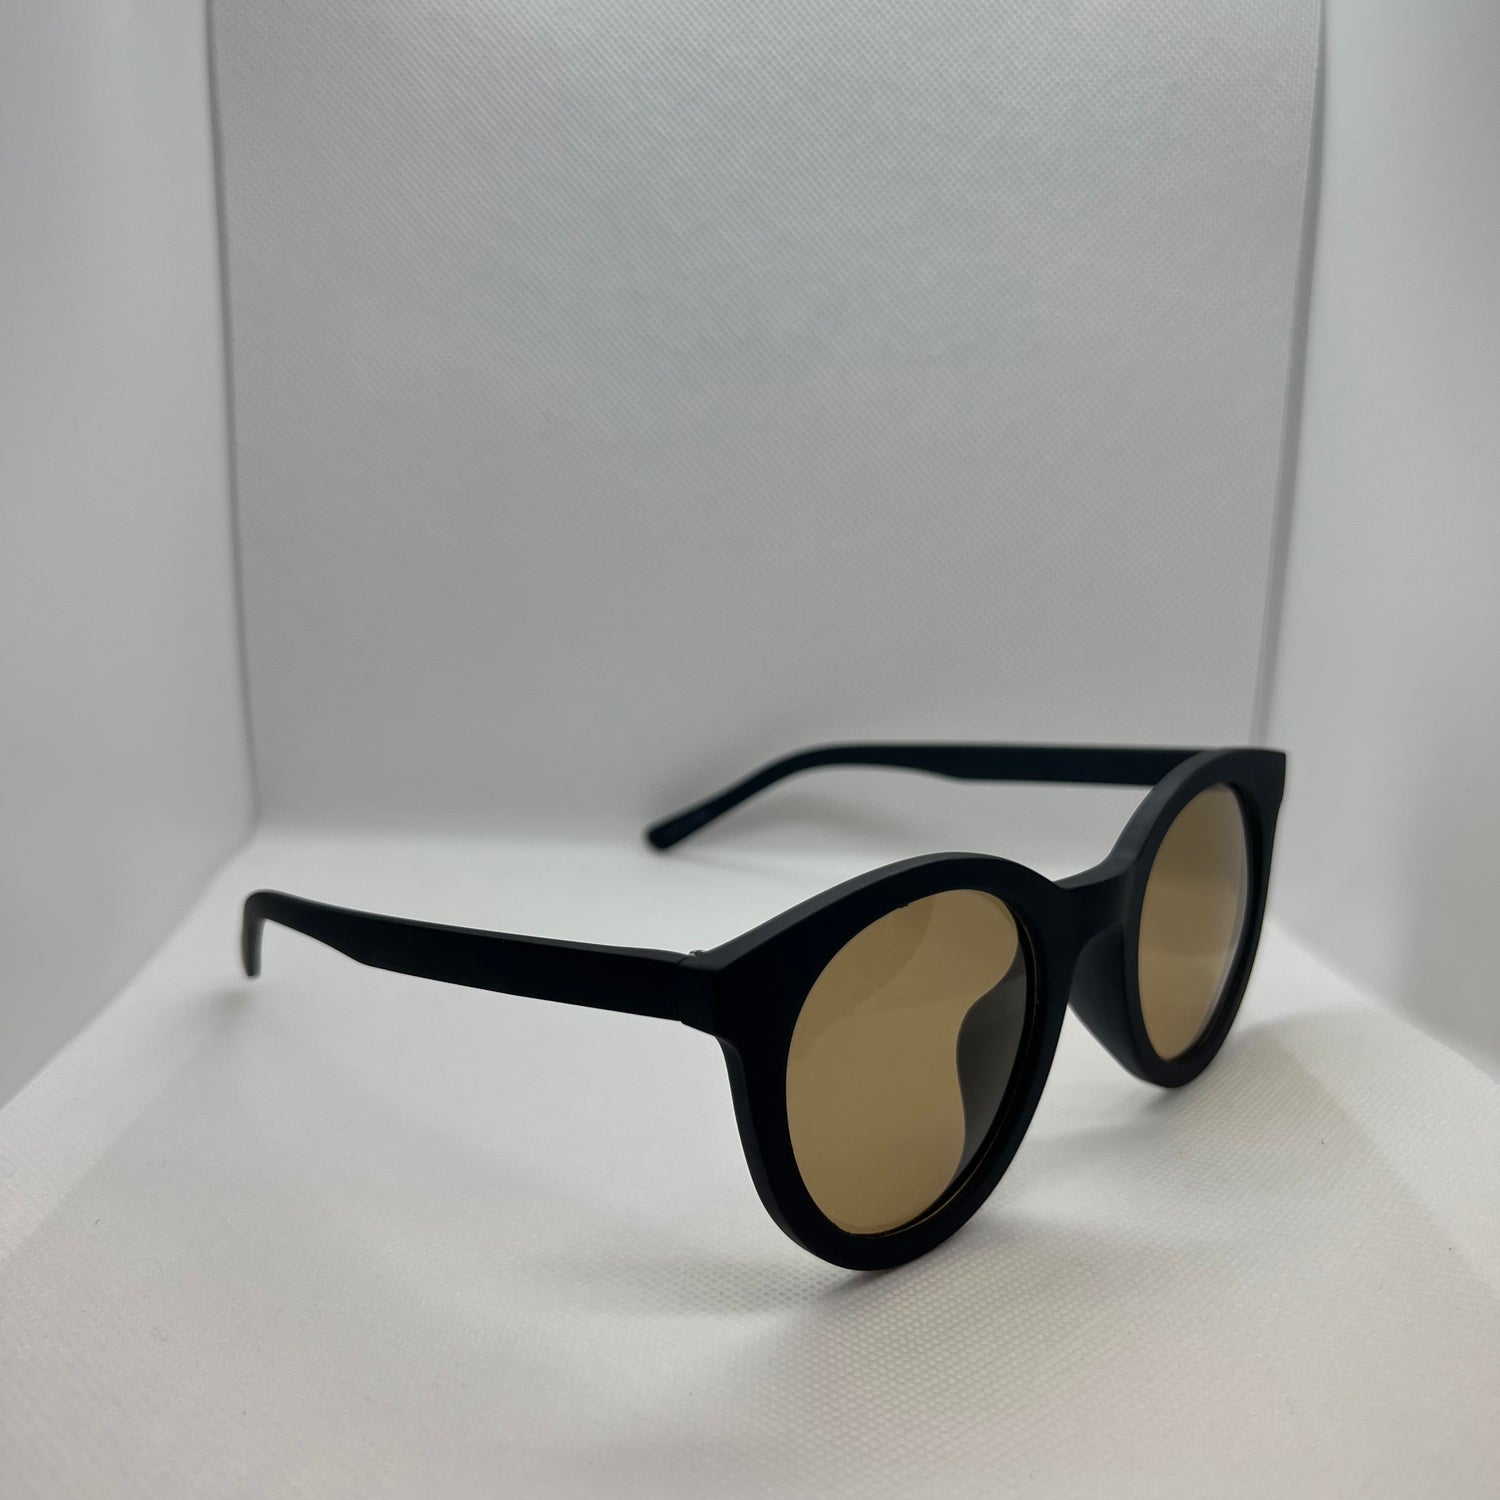 DENIS Sunglasses Rubber Frame Polarized Lenses